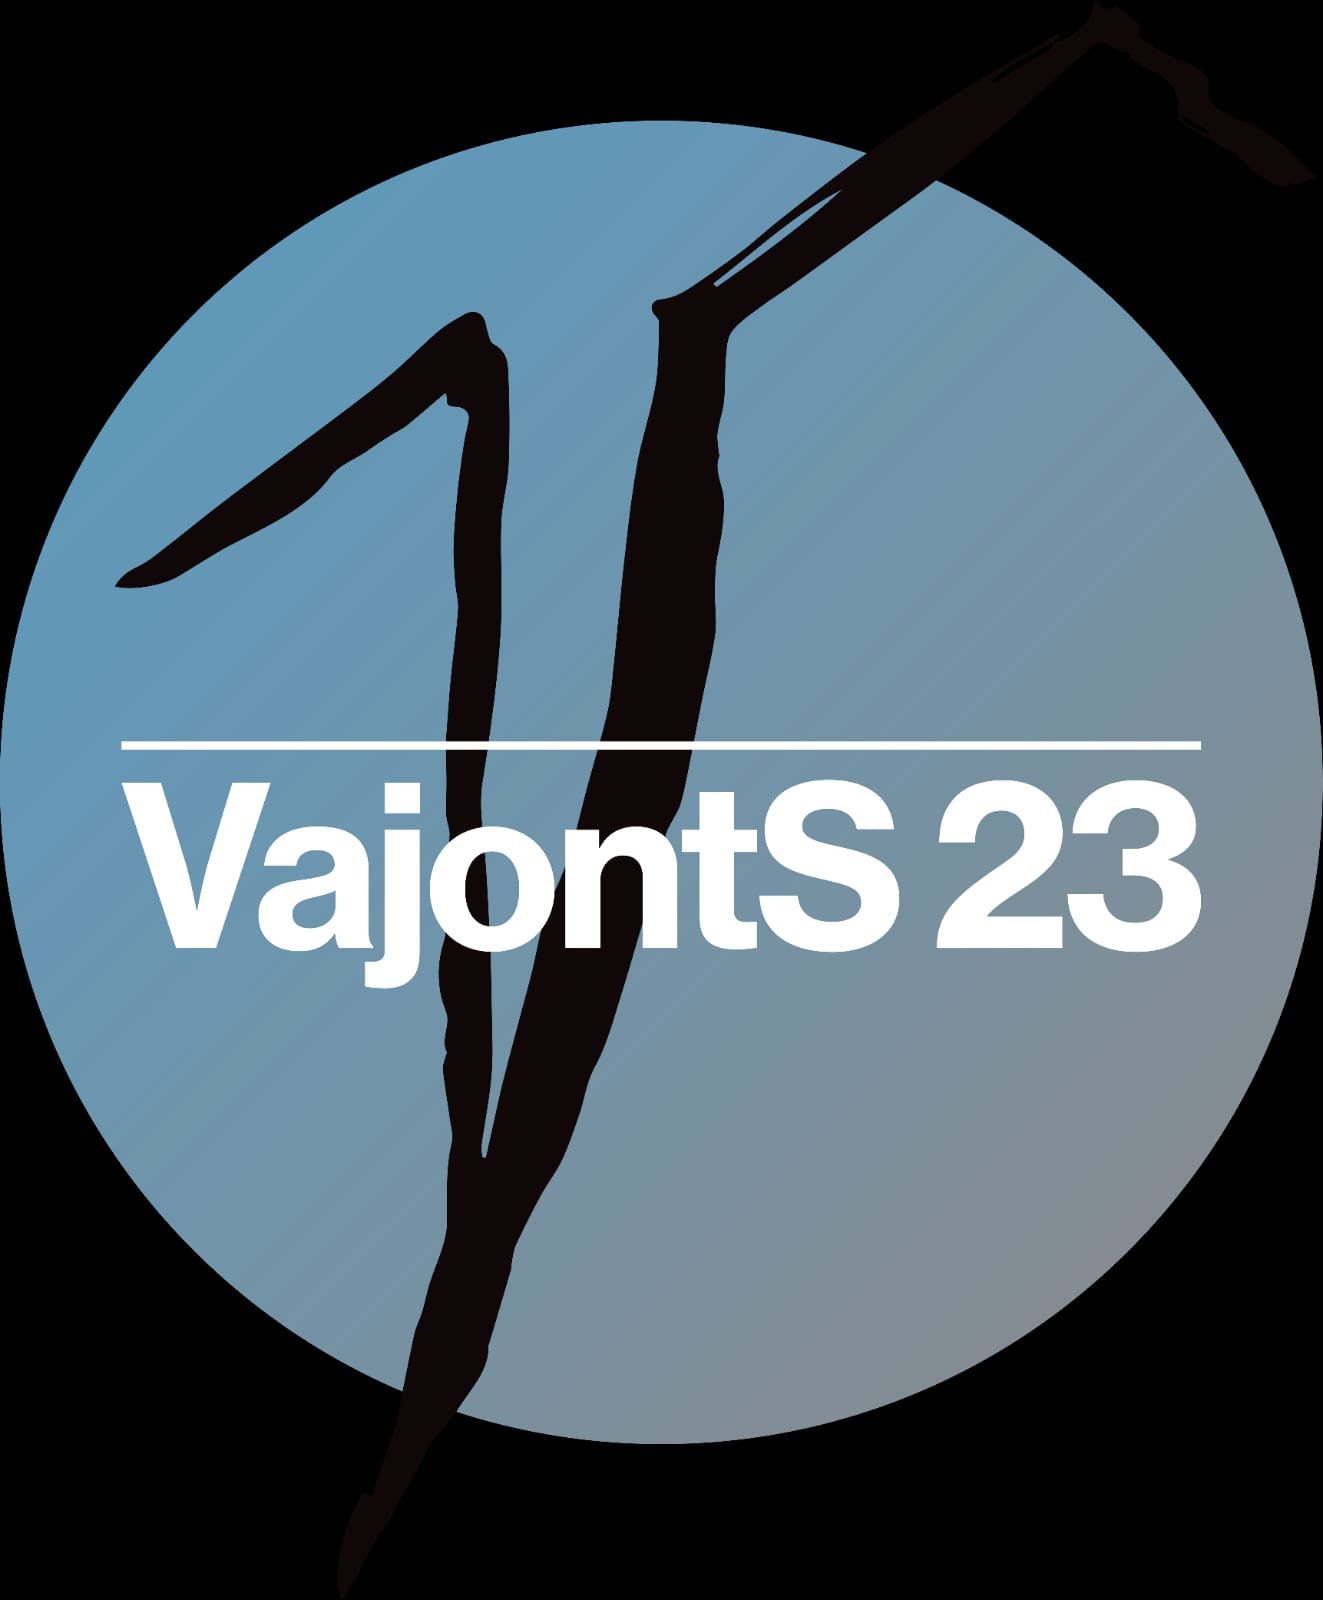 VajontS 23 sarà al Palamostre di Udine per Teatro Contatto il 9  ottobre  alle ore 21 sessant'anni dopo la tragedia per l'azione corale in contemporanea.